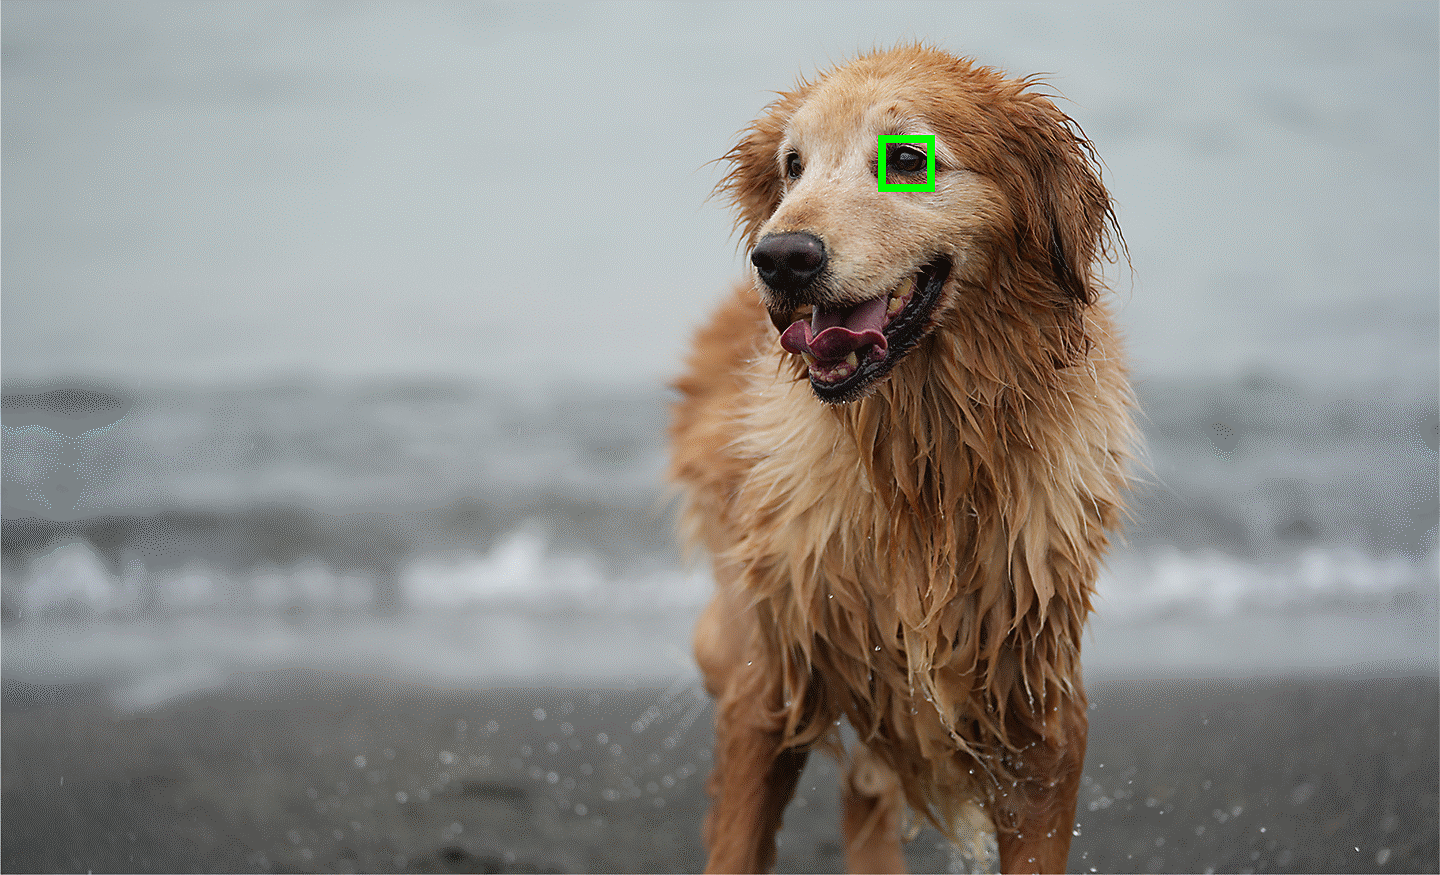 Fotografija koja ilustrira primjenu Eye AF-a u stvarnom vremenu na životinjama, s fokusom na oku snimanog psa